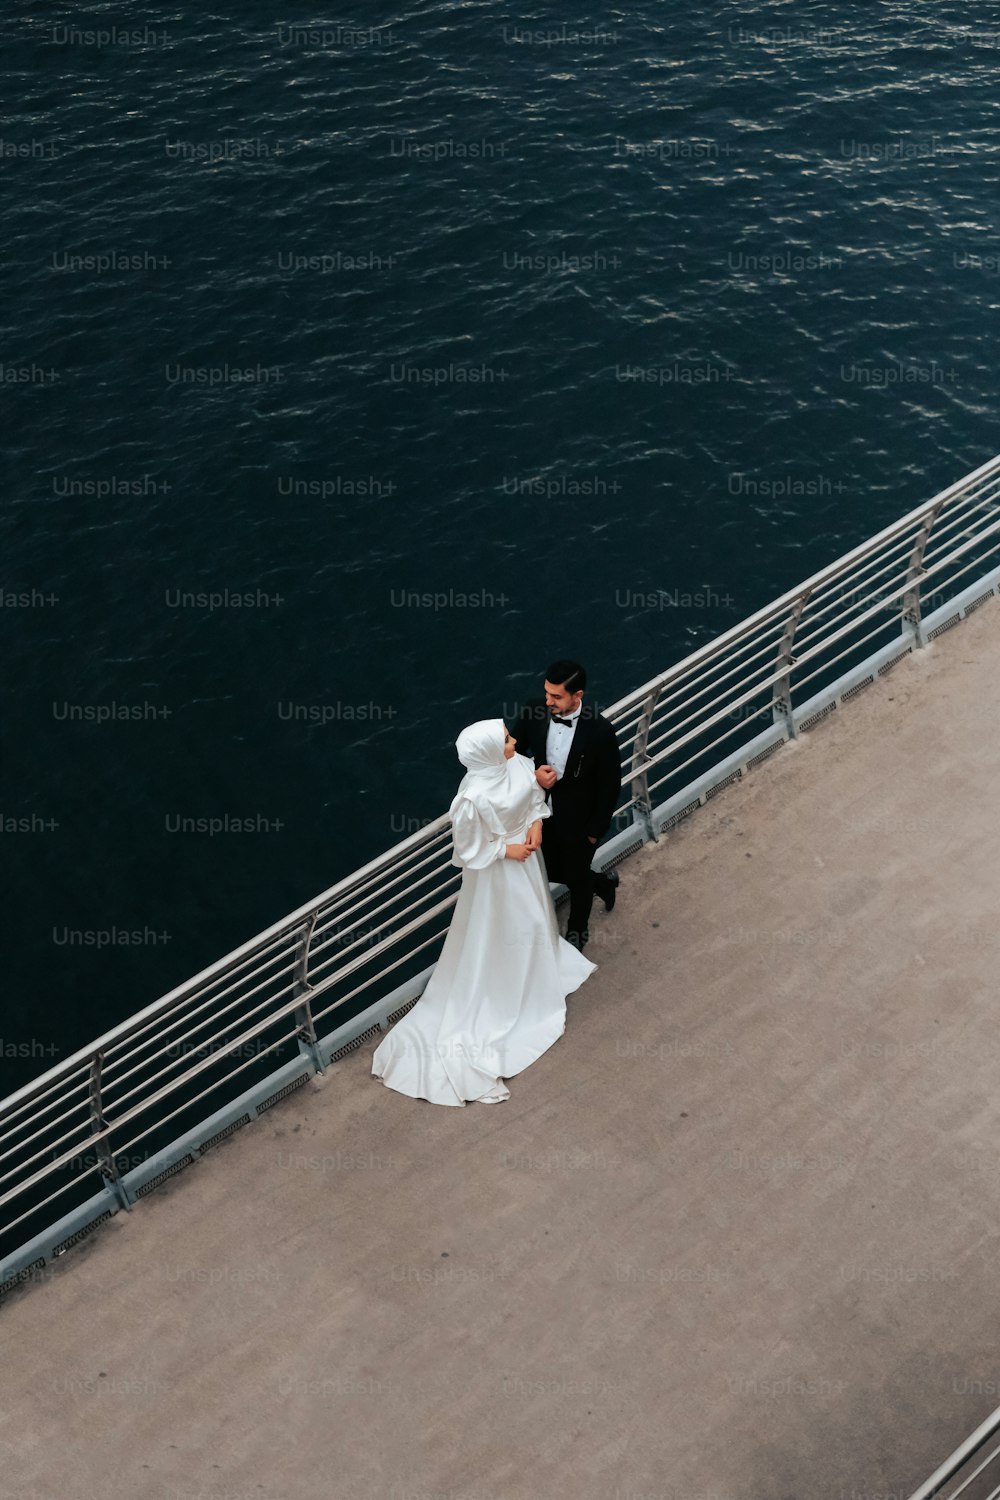 Una sposa e uno sposo in piedi su un molo accanto a uno specchio d'acqua